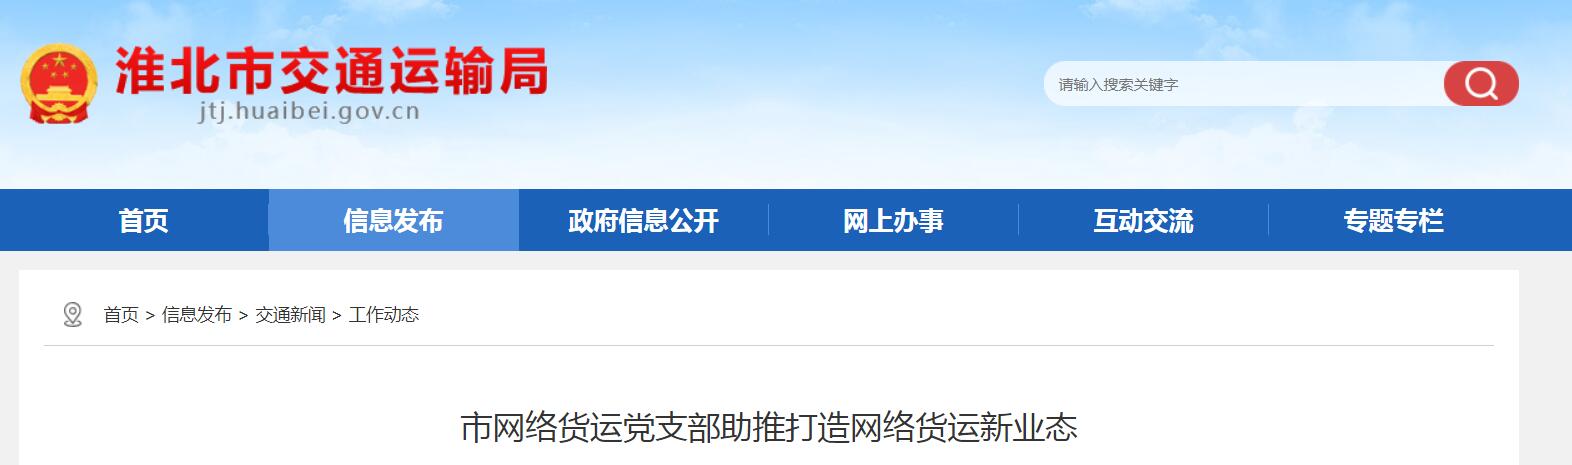 淮北市网络货运党支部助推打造网络货运新业态